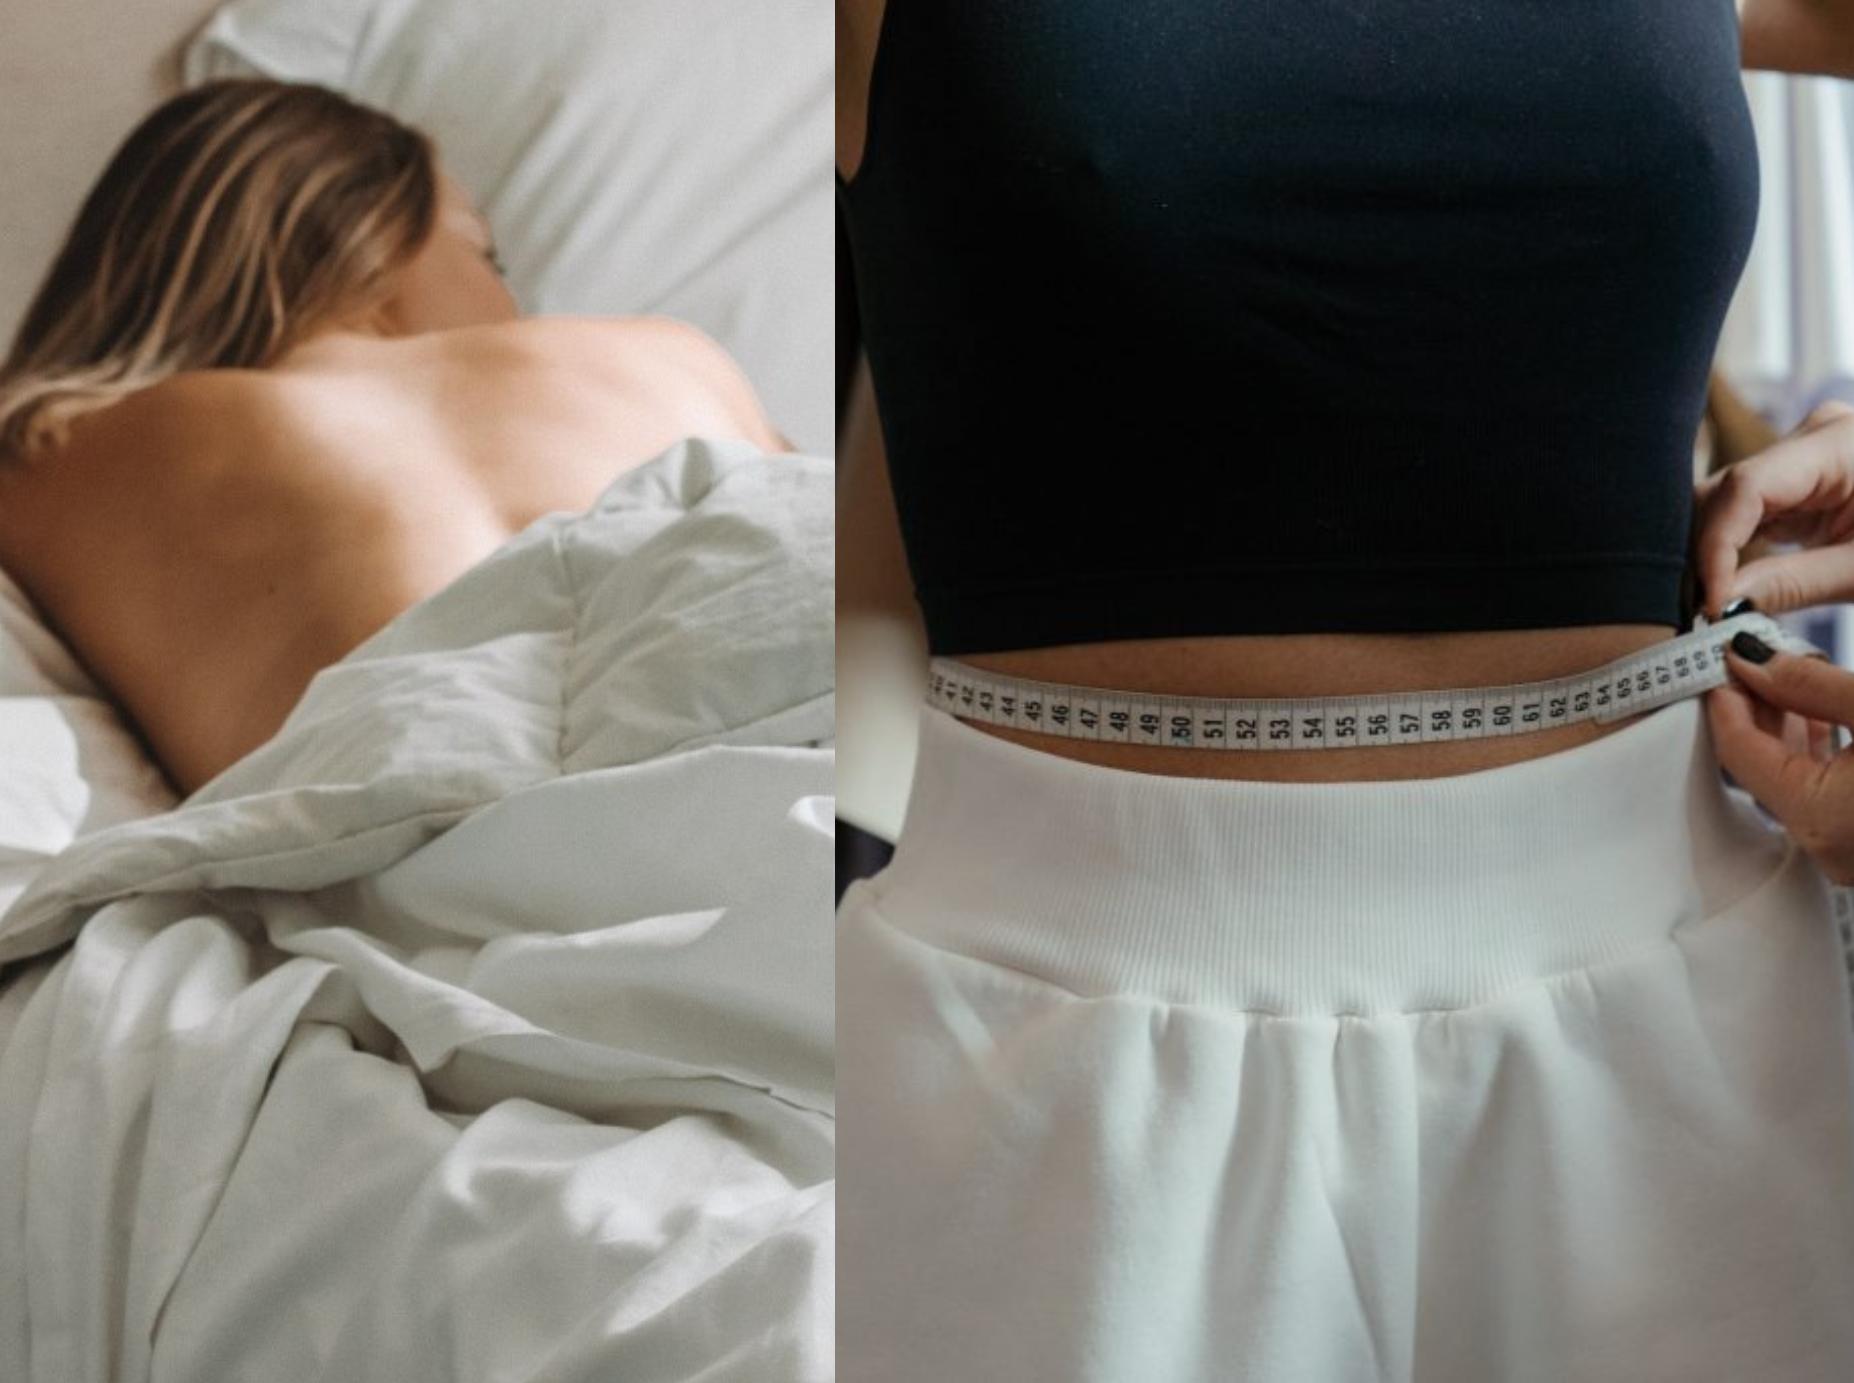 Αποκαλυπτικό: Αυτός είναι ο λόγος που πρέπει να κοιμάστε γυμνοί για να χάσετε βάρος